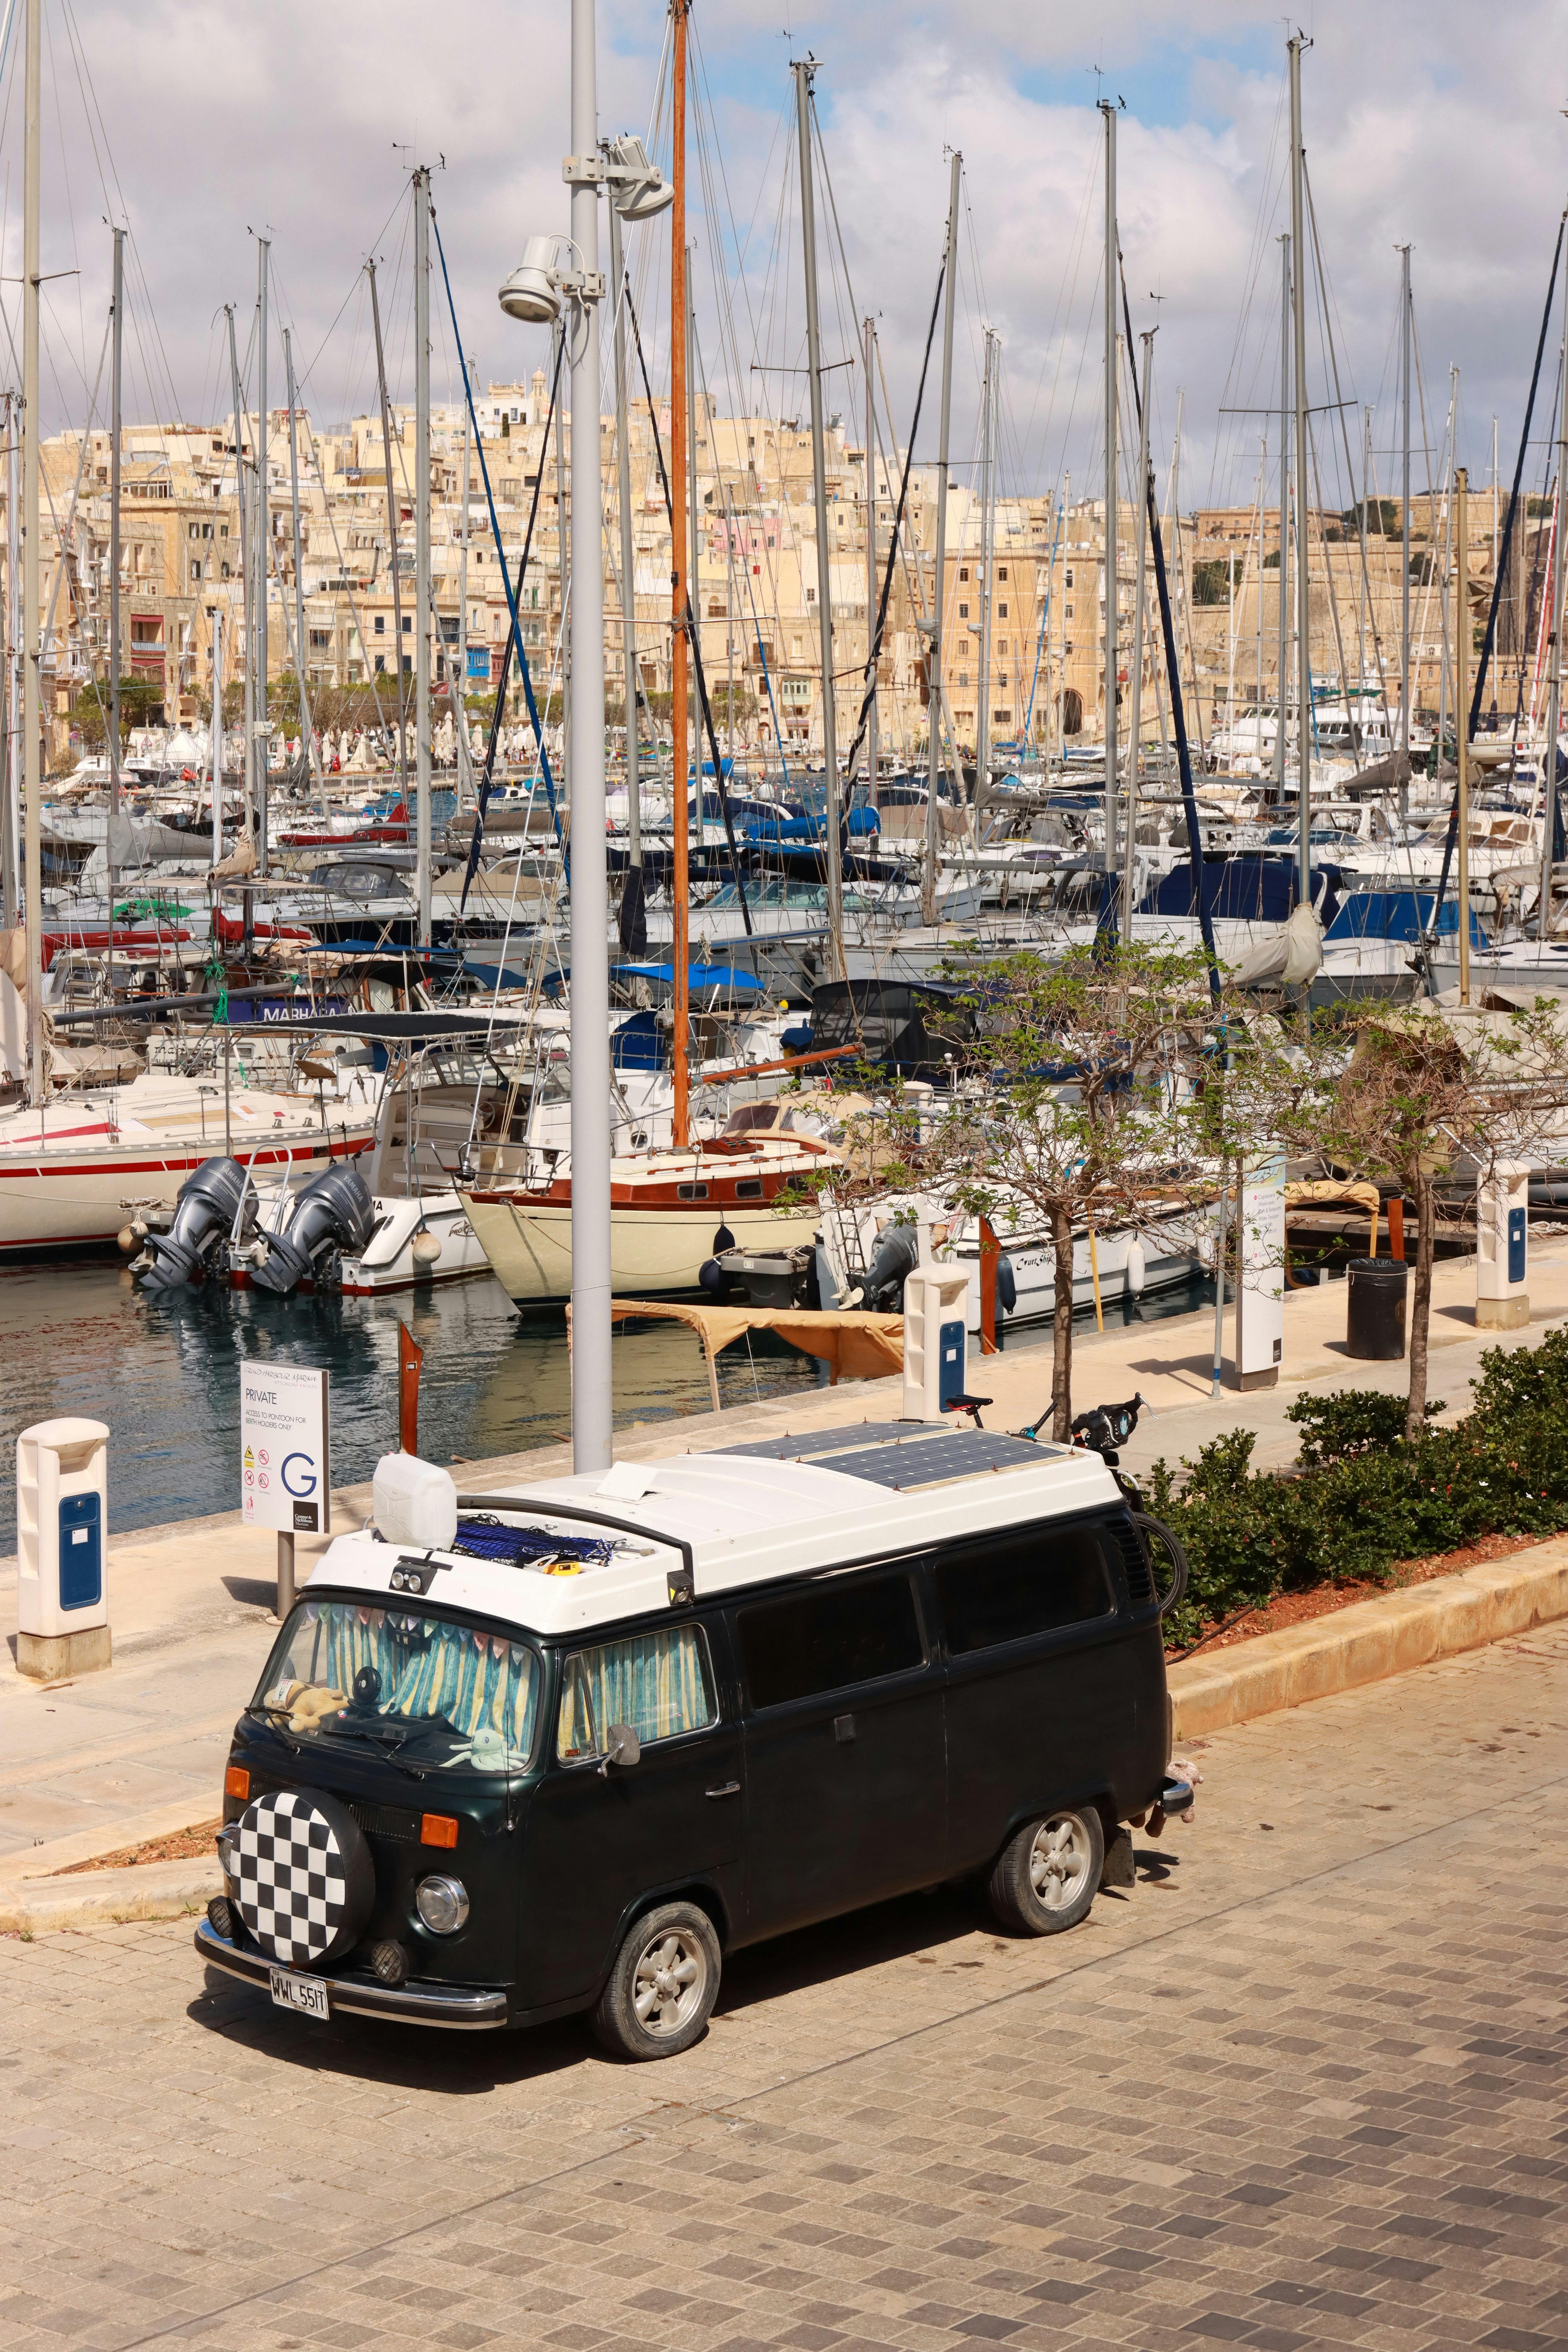 Malta-tietovisa: Kuinka paljon tiedät tästä kauniista Välimeren saaresta?